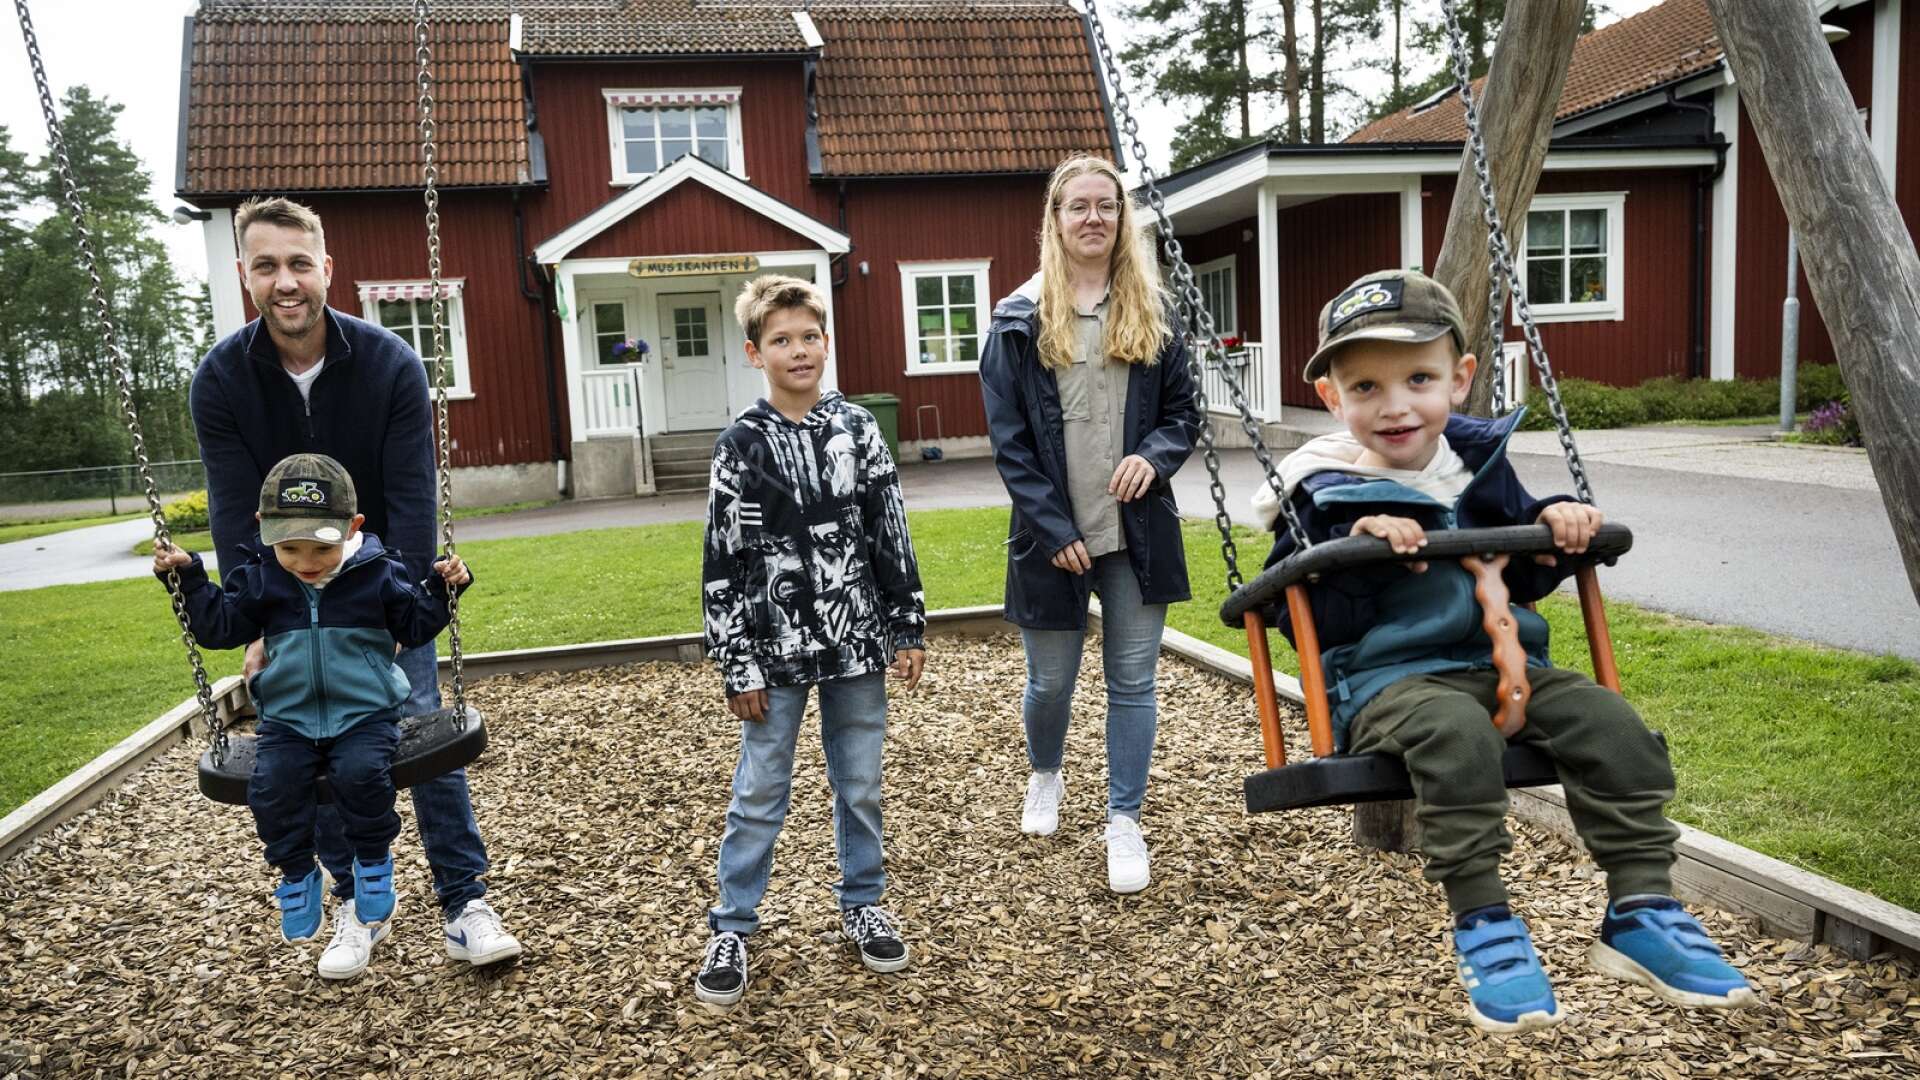 Ulrika Andersson har bott i Tveta, utanför Säffle, i hela sitt liv. Här besöker hon vägkyrkan tillsammans med sambon Robert Andersson och barnen, från vänster Alfred, Albin och Axel.